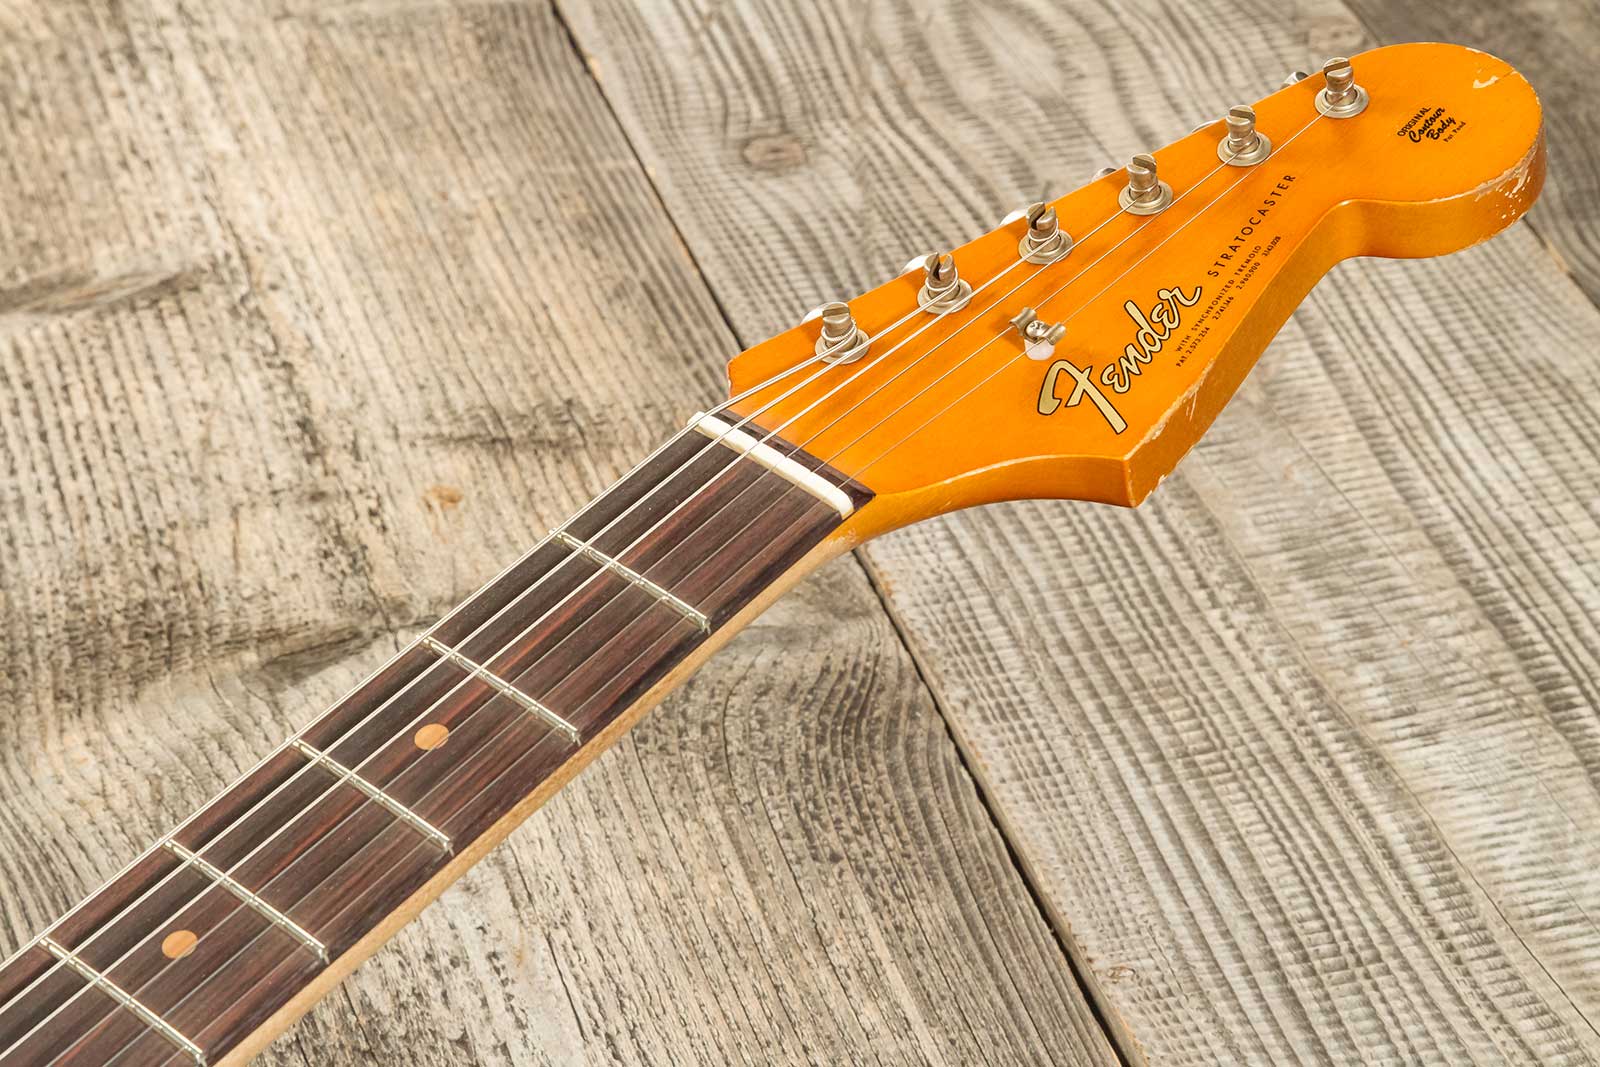 Fender Custom Shop Strat 1964 Masterbuilt P.waller 3s Trem Rw #r129130 - Heavy Relic Candy Apple Red - Guitarra eléctrica con forma de str. - Variatio